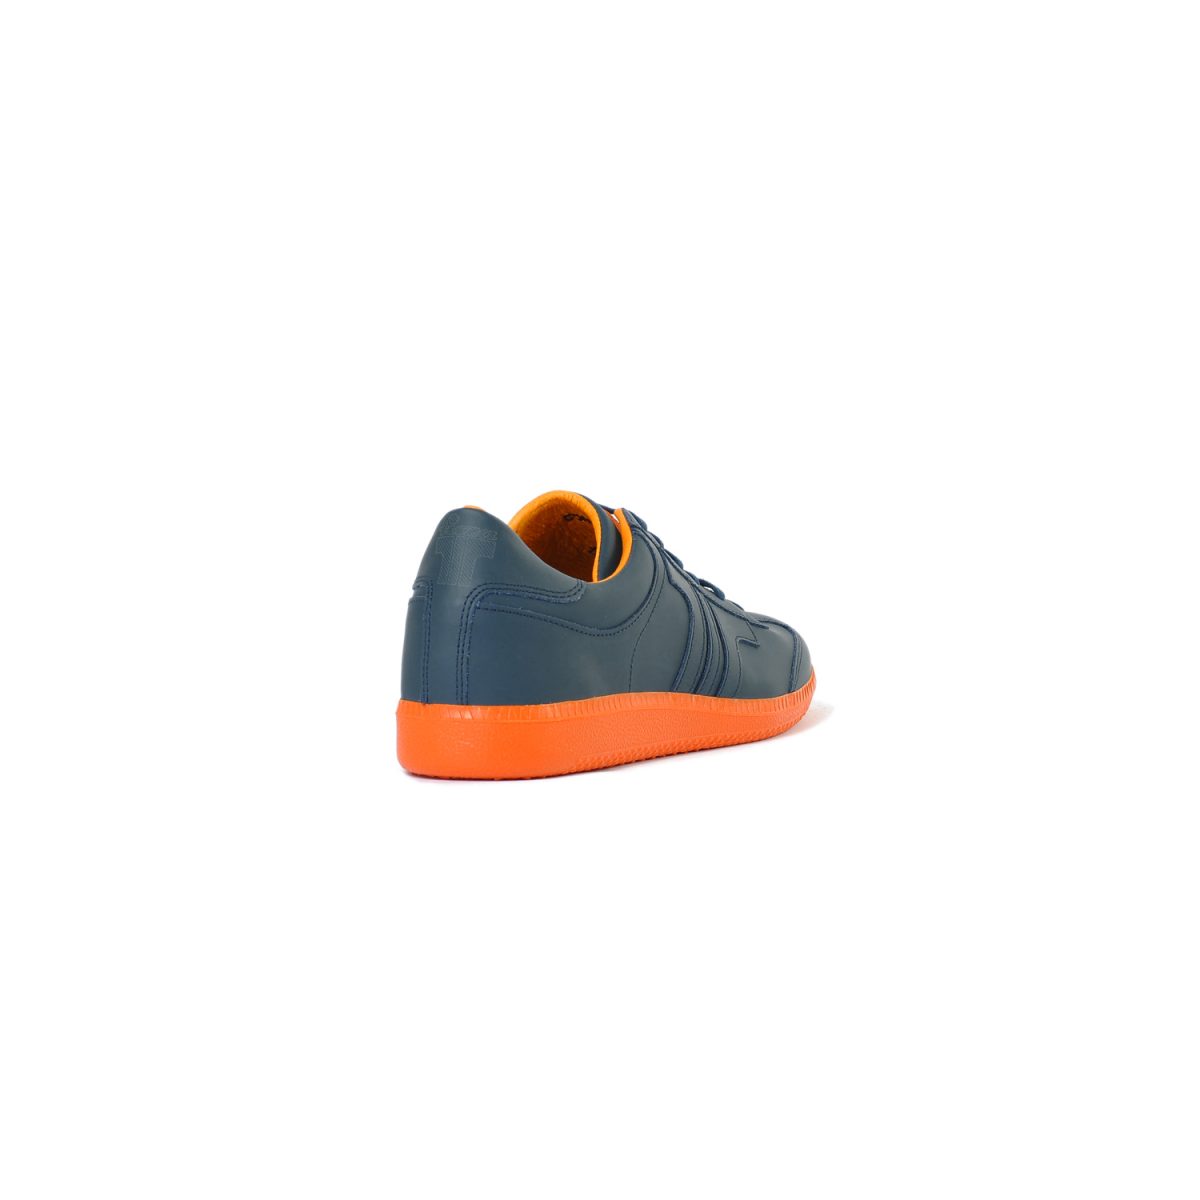 Tisza cipő - Compakt - Sötétkék-narancs